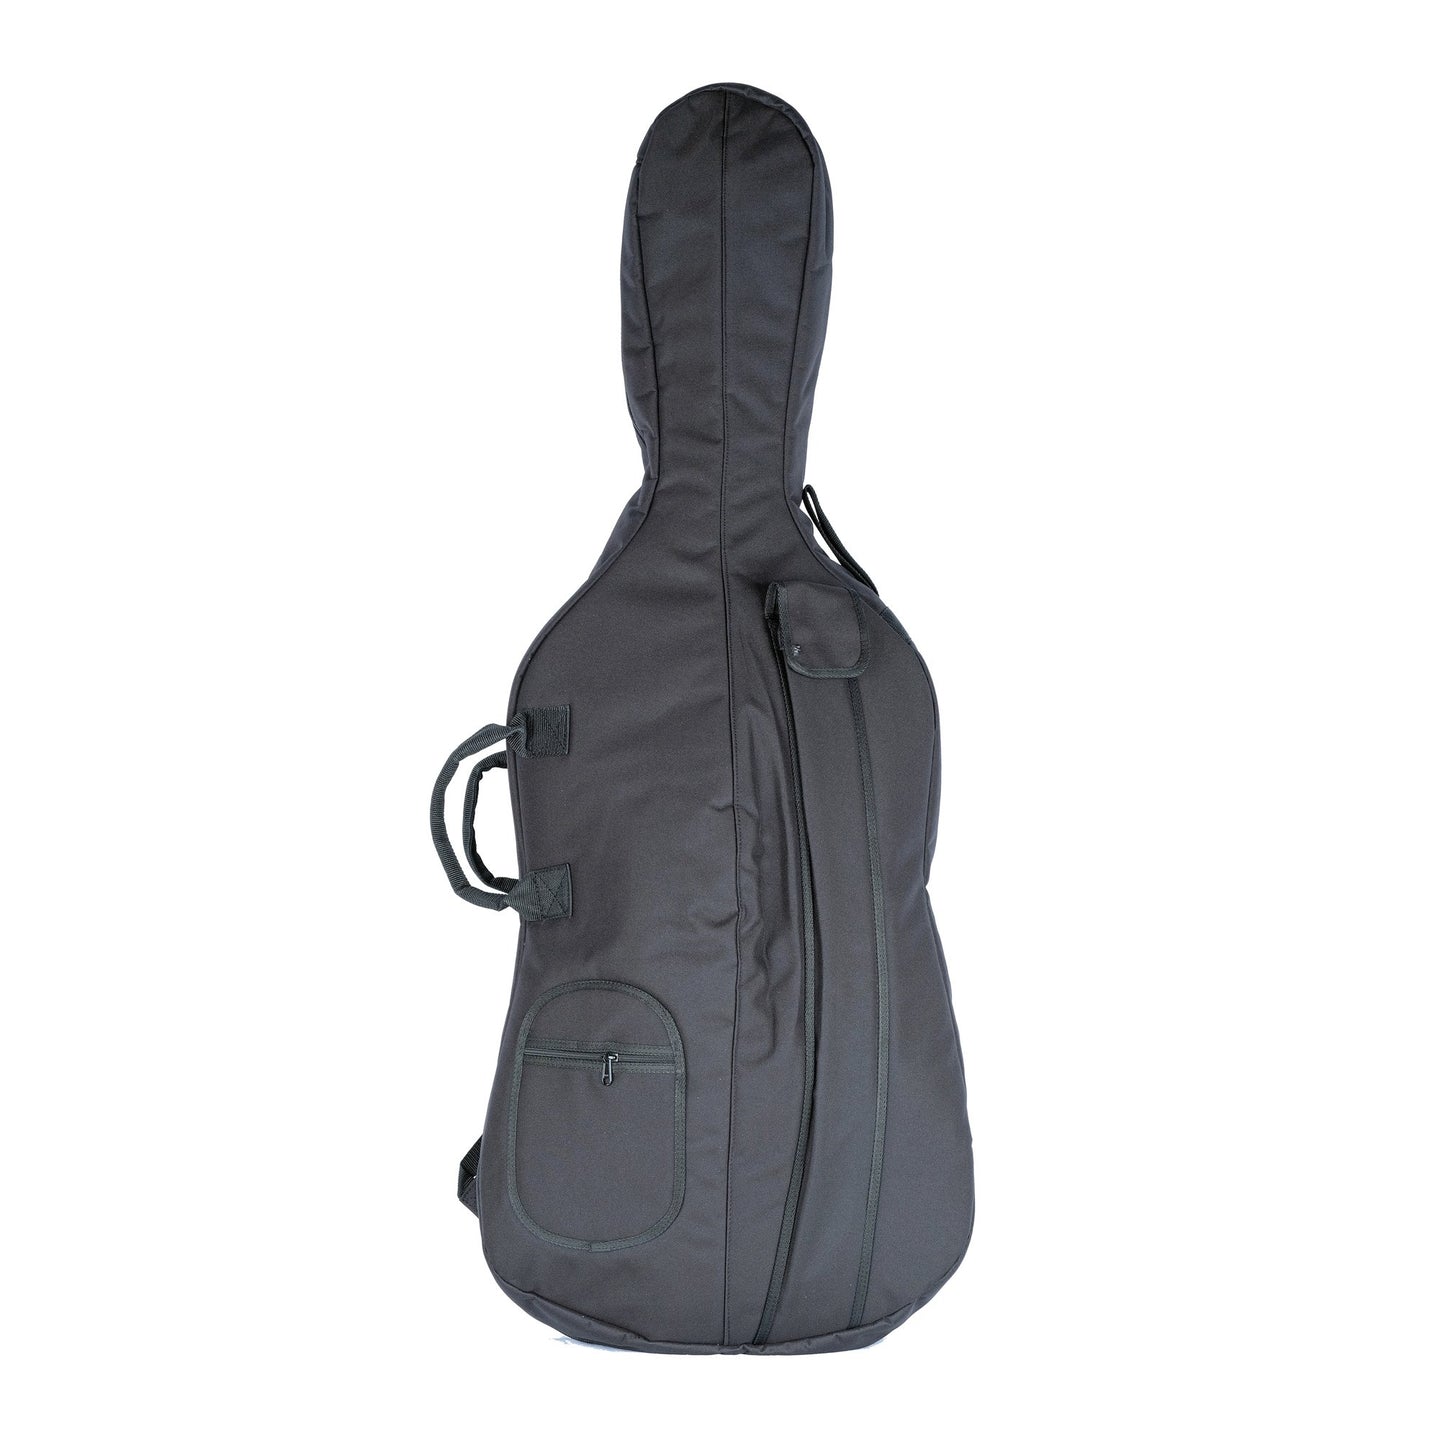 CANTANA Academy Plus Cello Bag